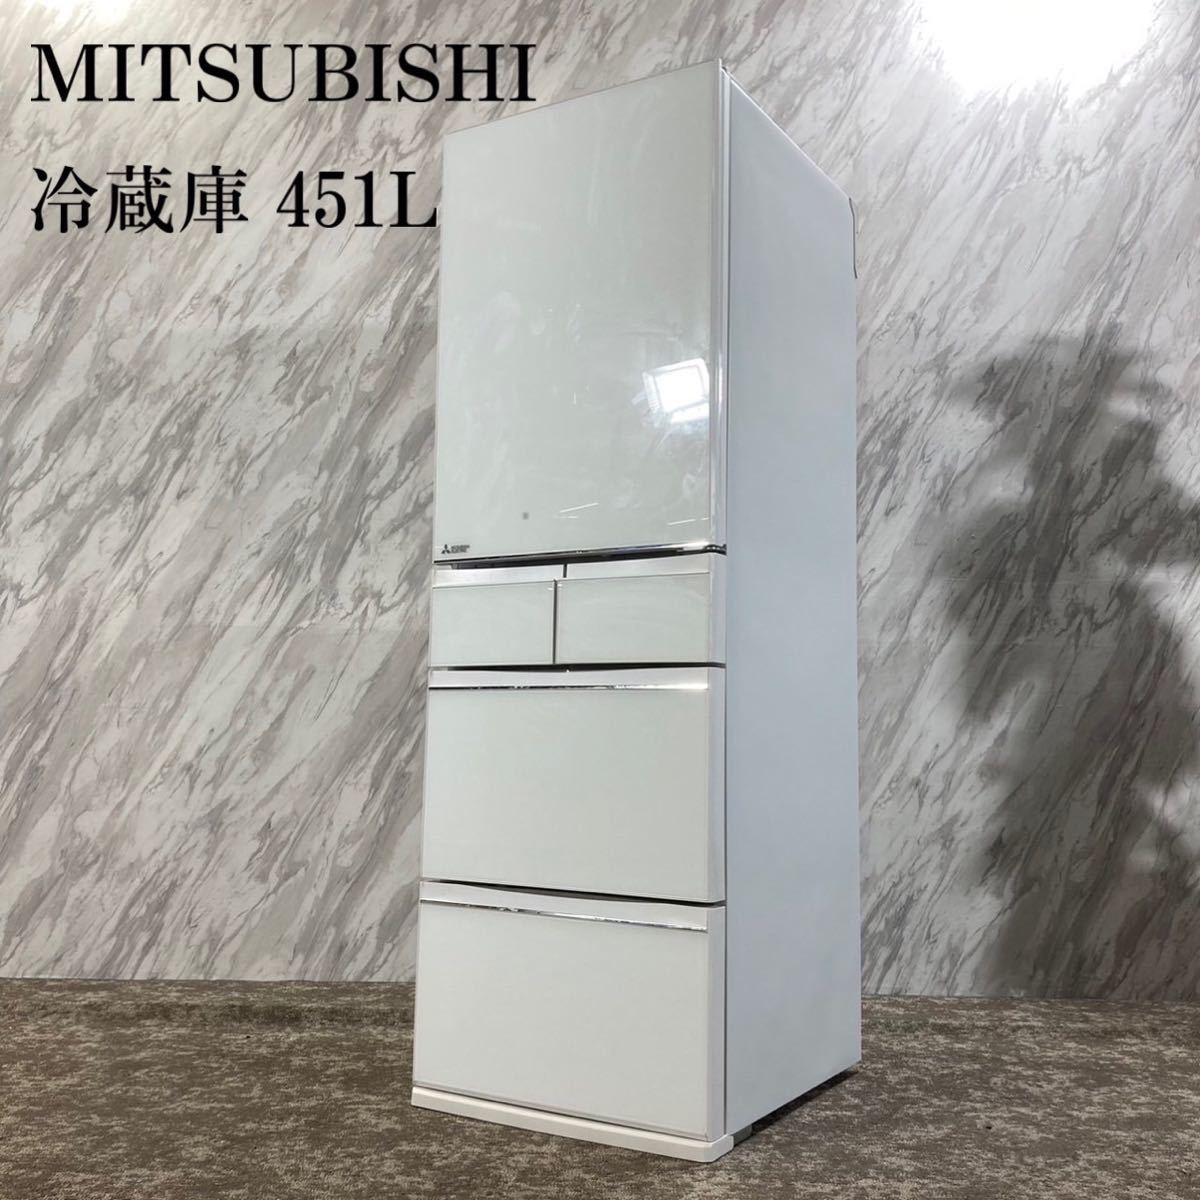 MITSUBISHI 冷蔵庫 MR-MB45E-W2 451L家電 F093 | matterco.com.br